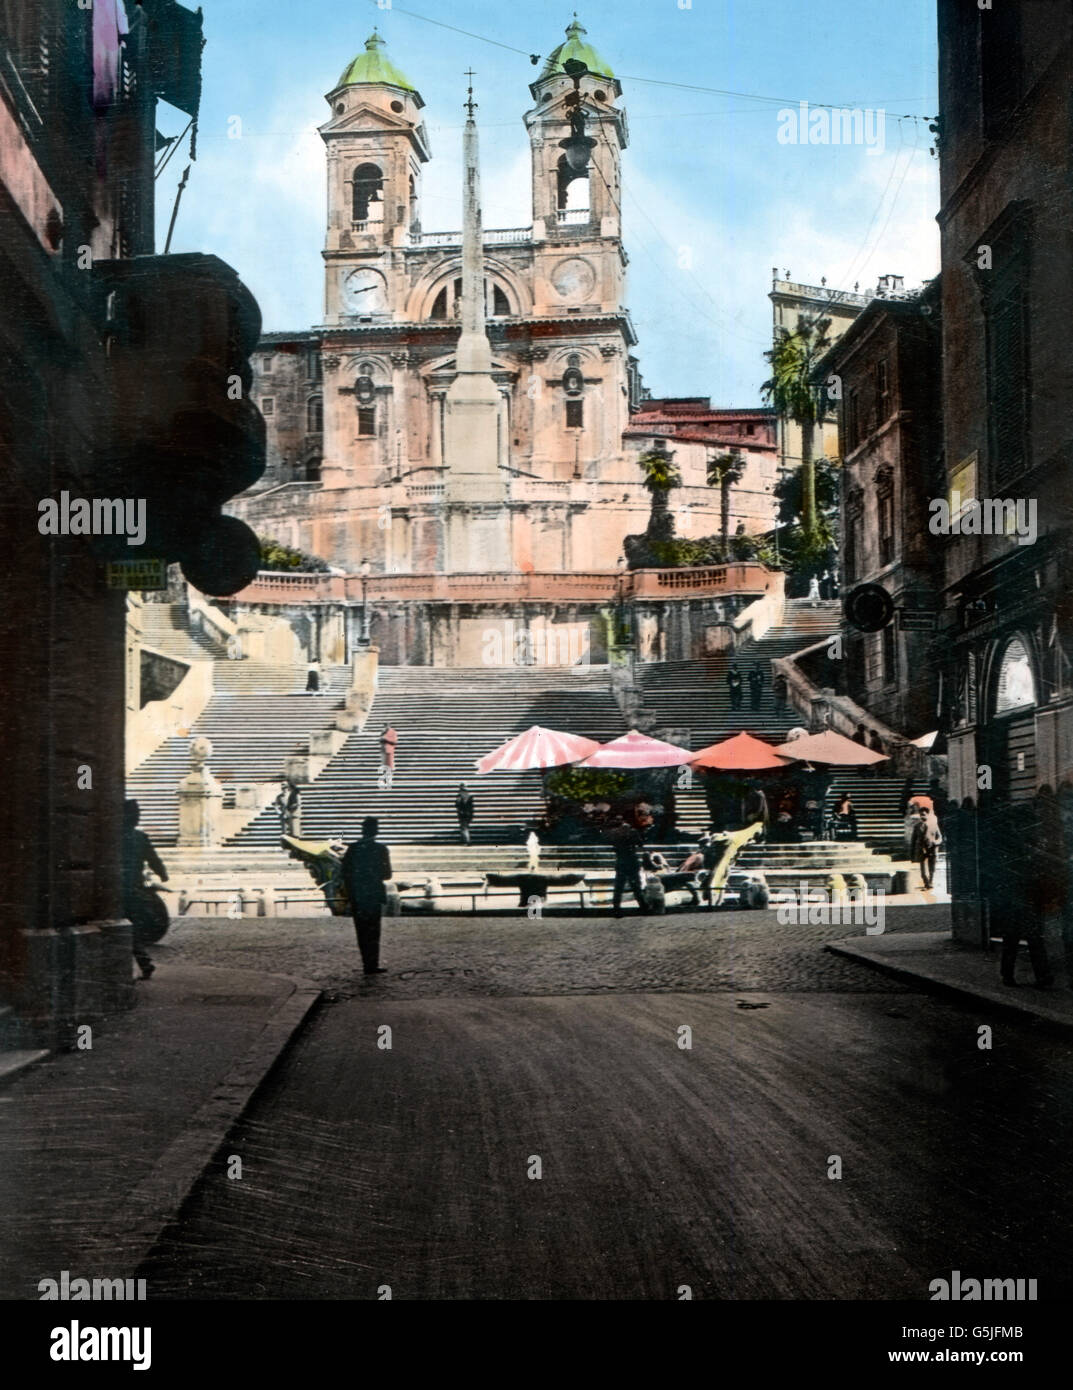 Spanische Treppe mit der Kirche Trinita dei Monti in Rom, Italien 1920er Jahre. Scalinata di piazza di Spagna con la chiesa Trinita dei Monti a Roma, Italia 1920s. Foto Stock